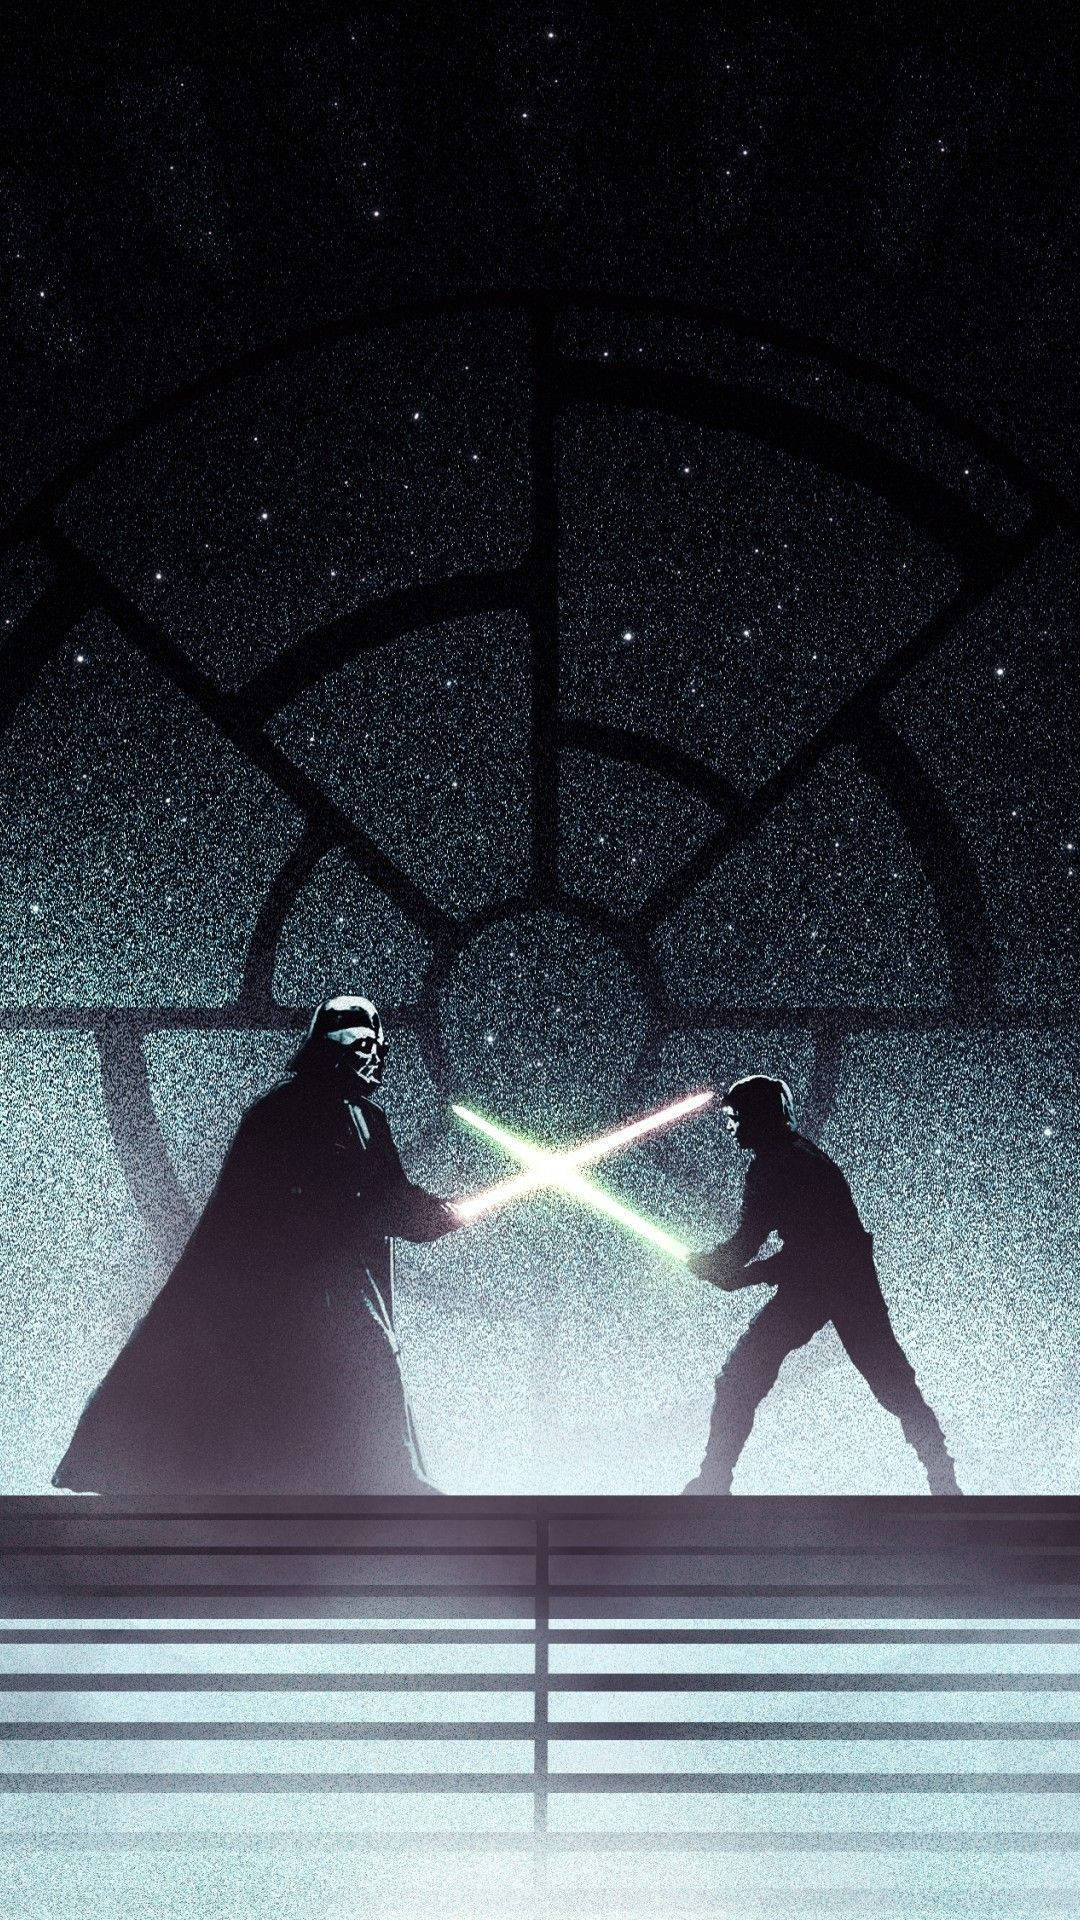 Vader Versus Luke Skywalker Star Wars 4k Iphone Wallpaper